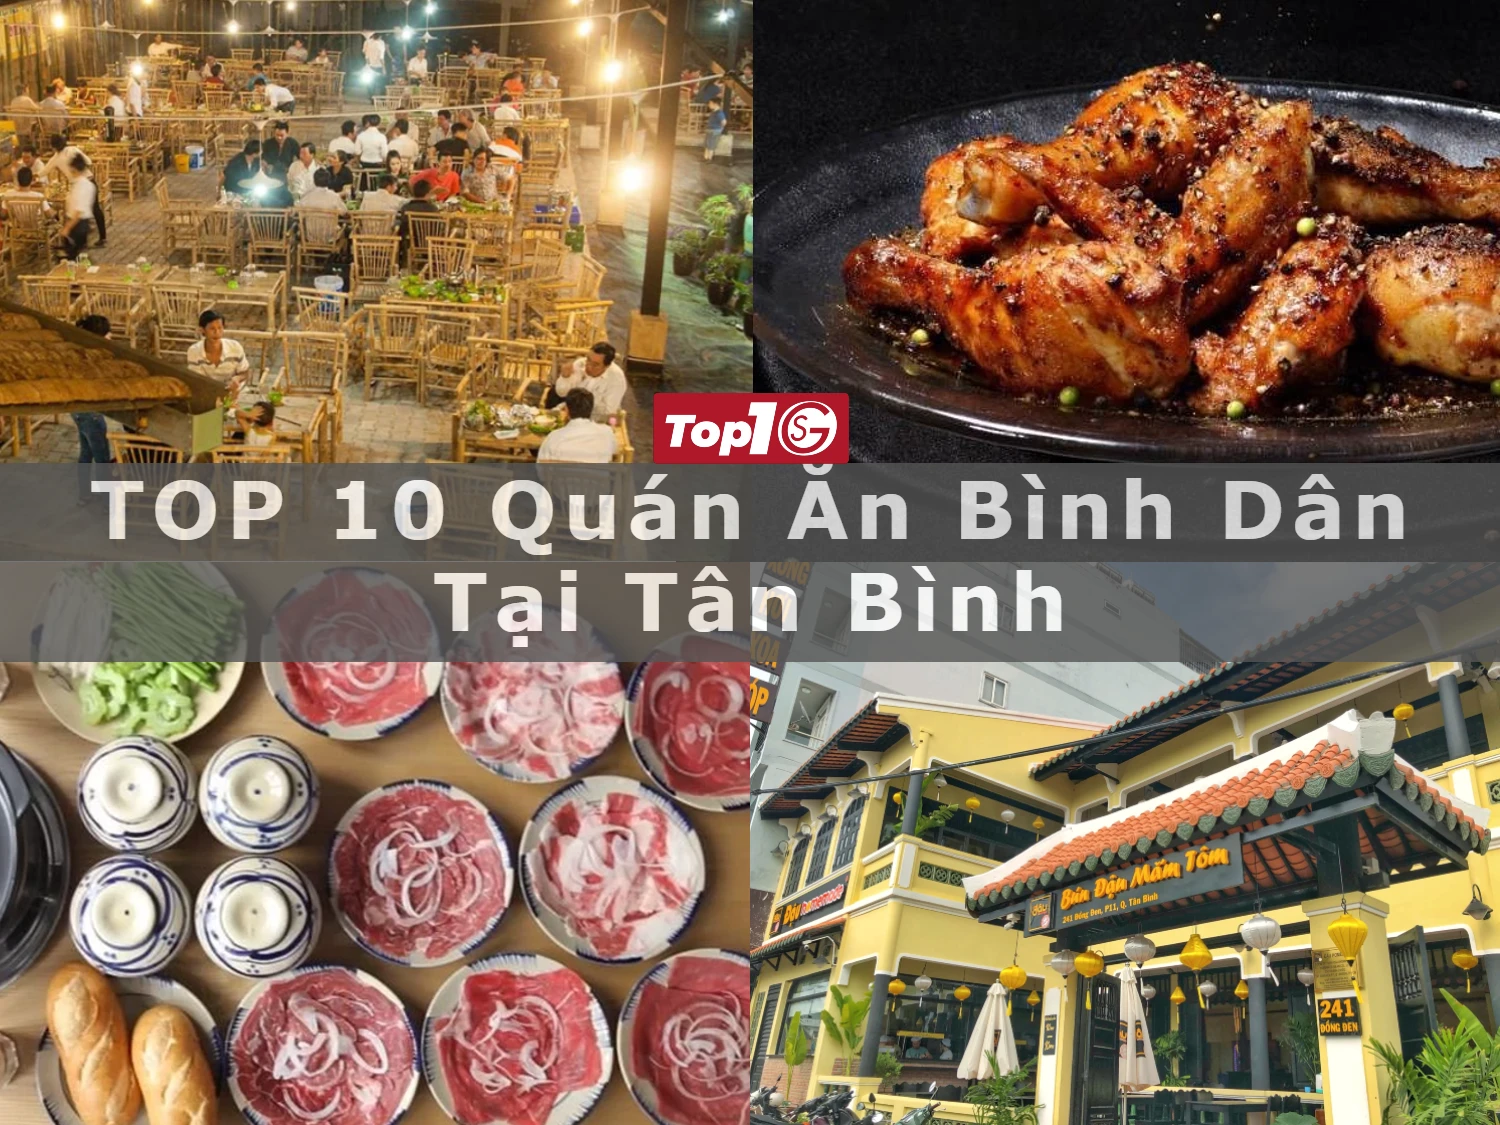 TOP 10 quán ăn bình dân tại Tân Bình ngon ở TPHCM